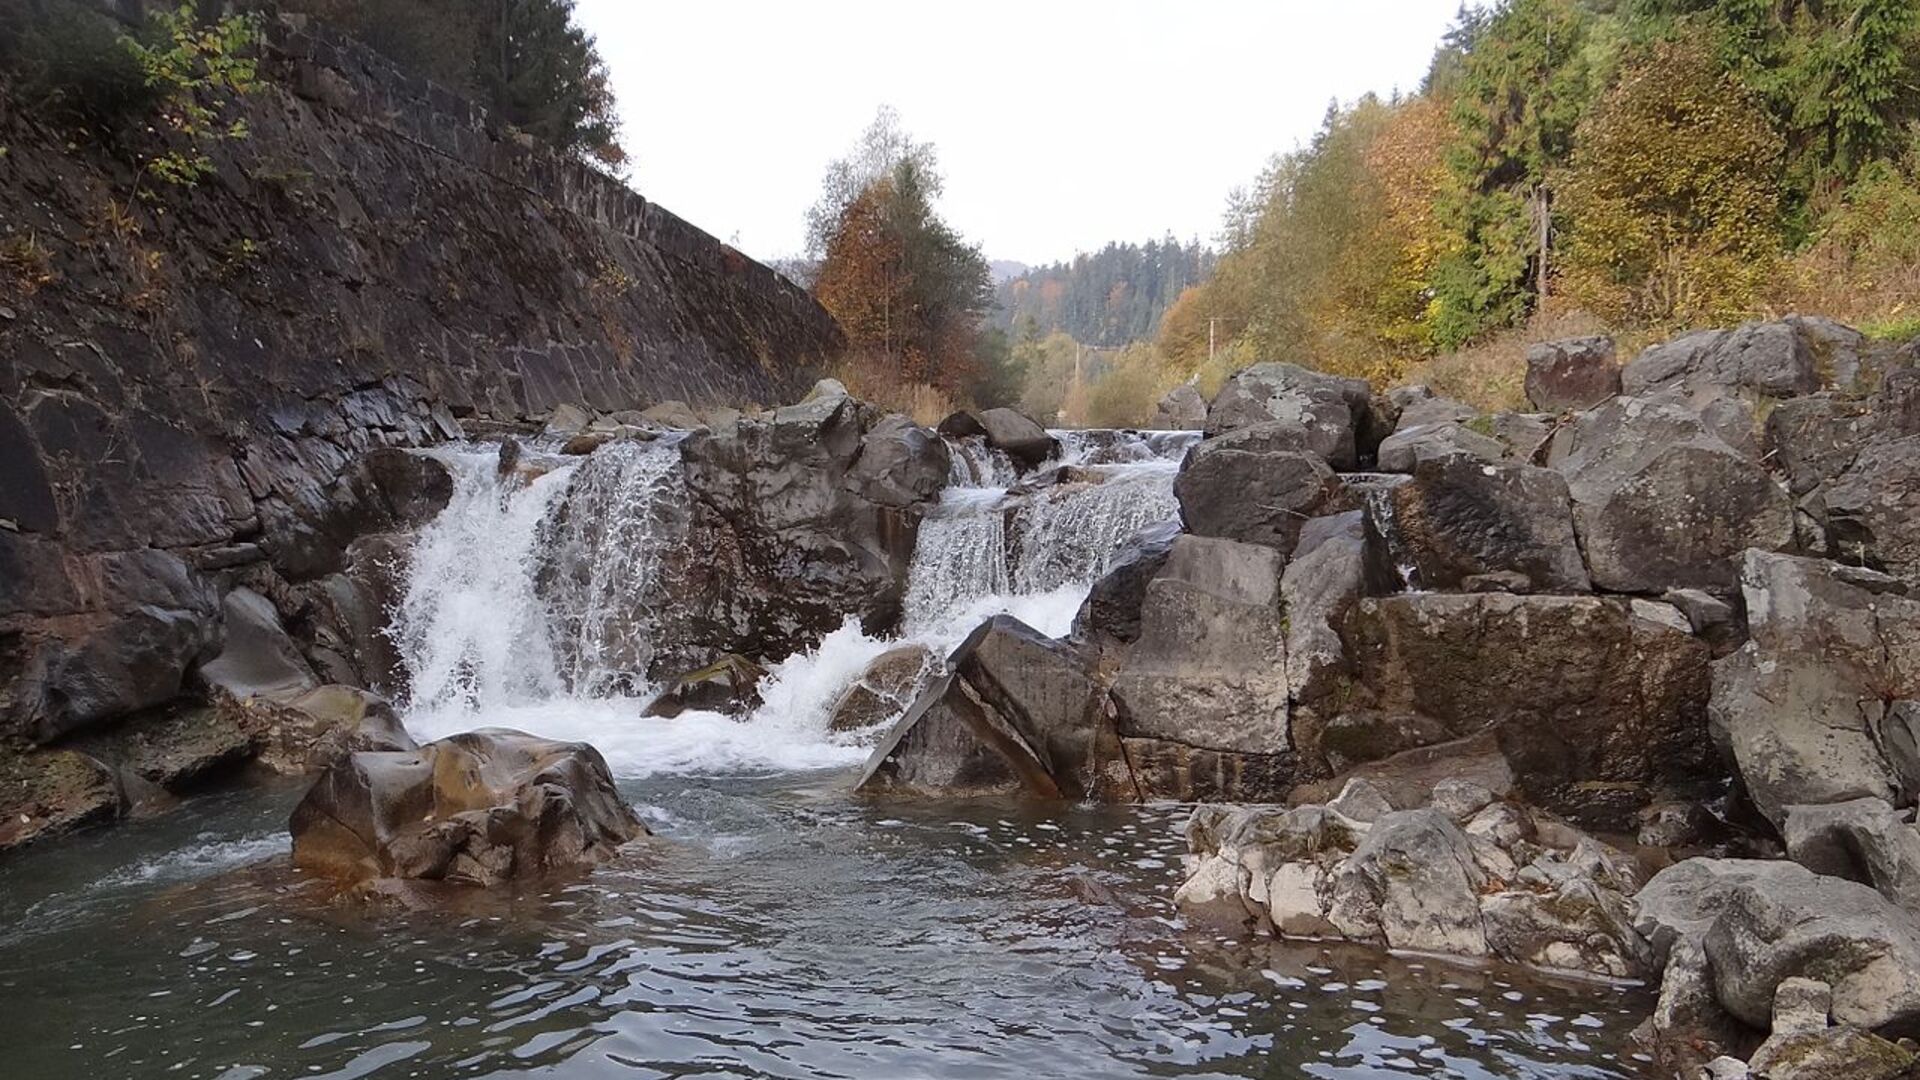 Wodospad zwany Spadem w Szczawie